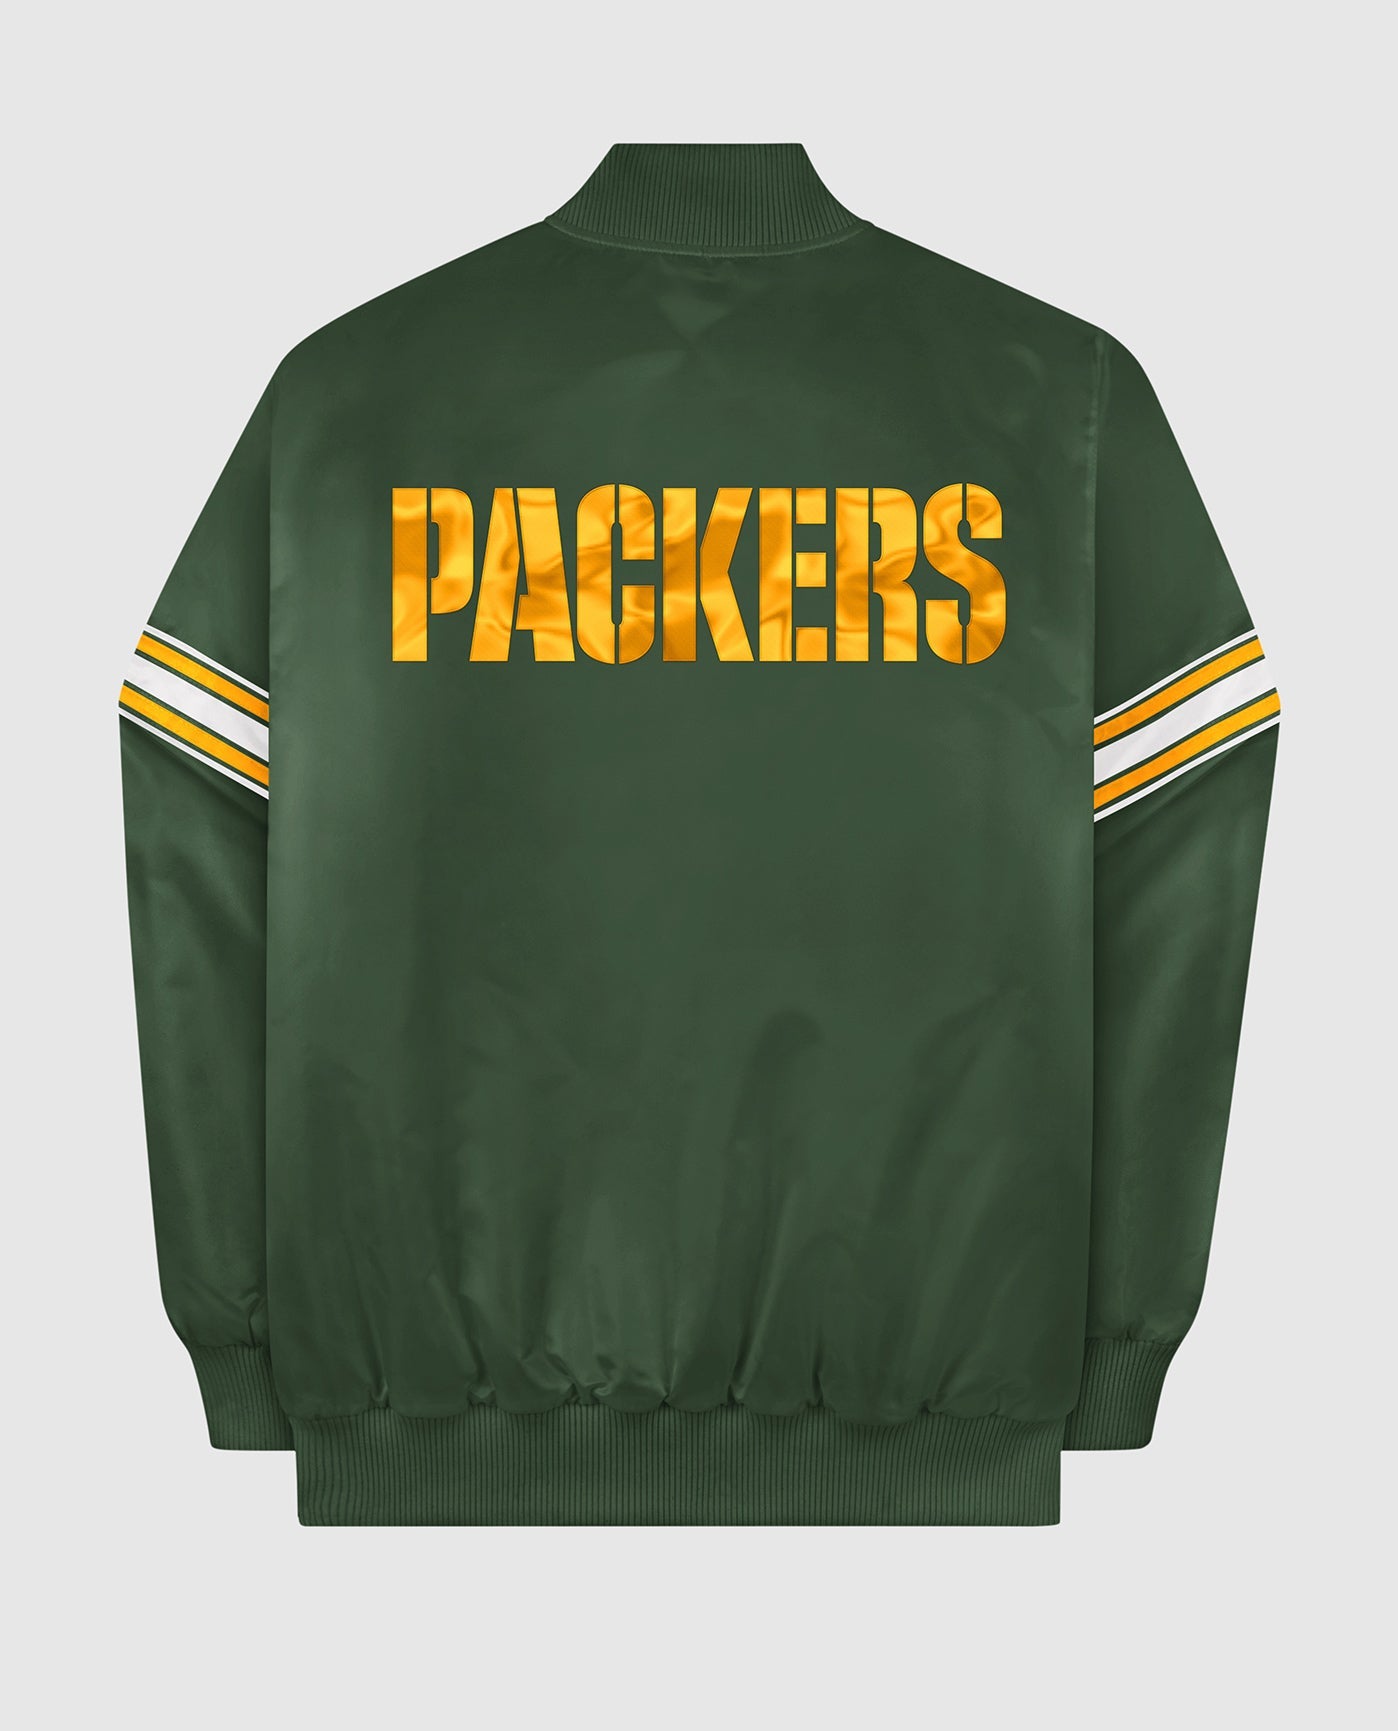 Vintage Jacket : r/GreenBayPackers